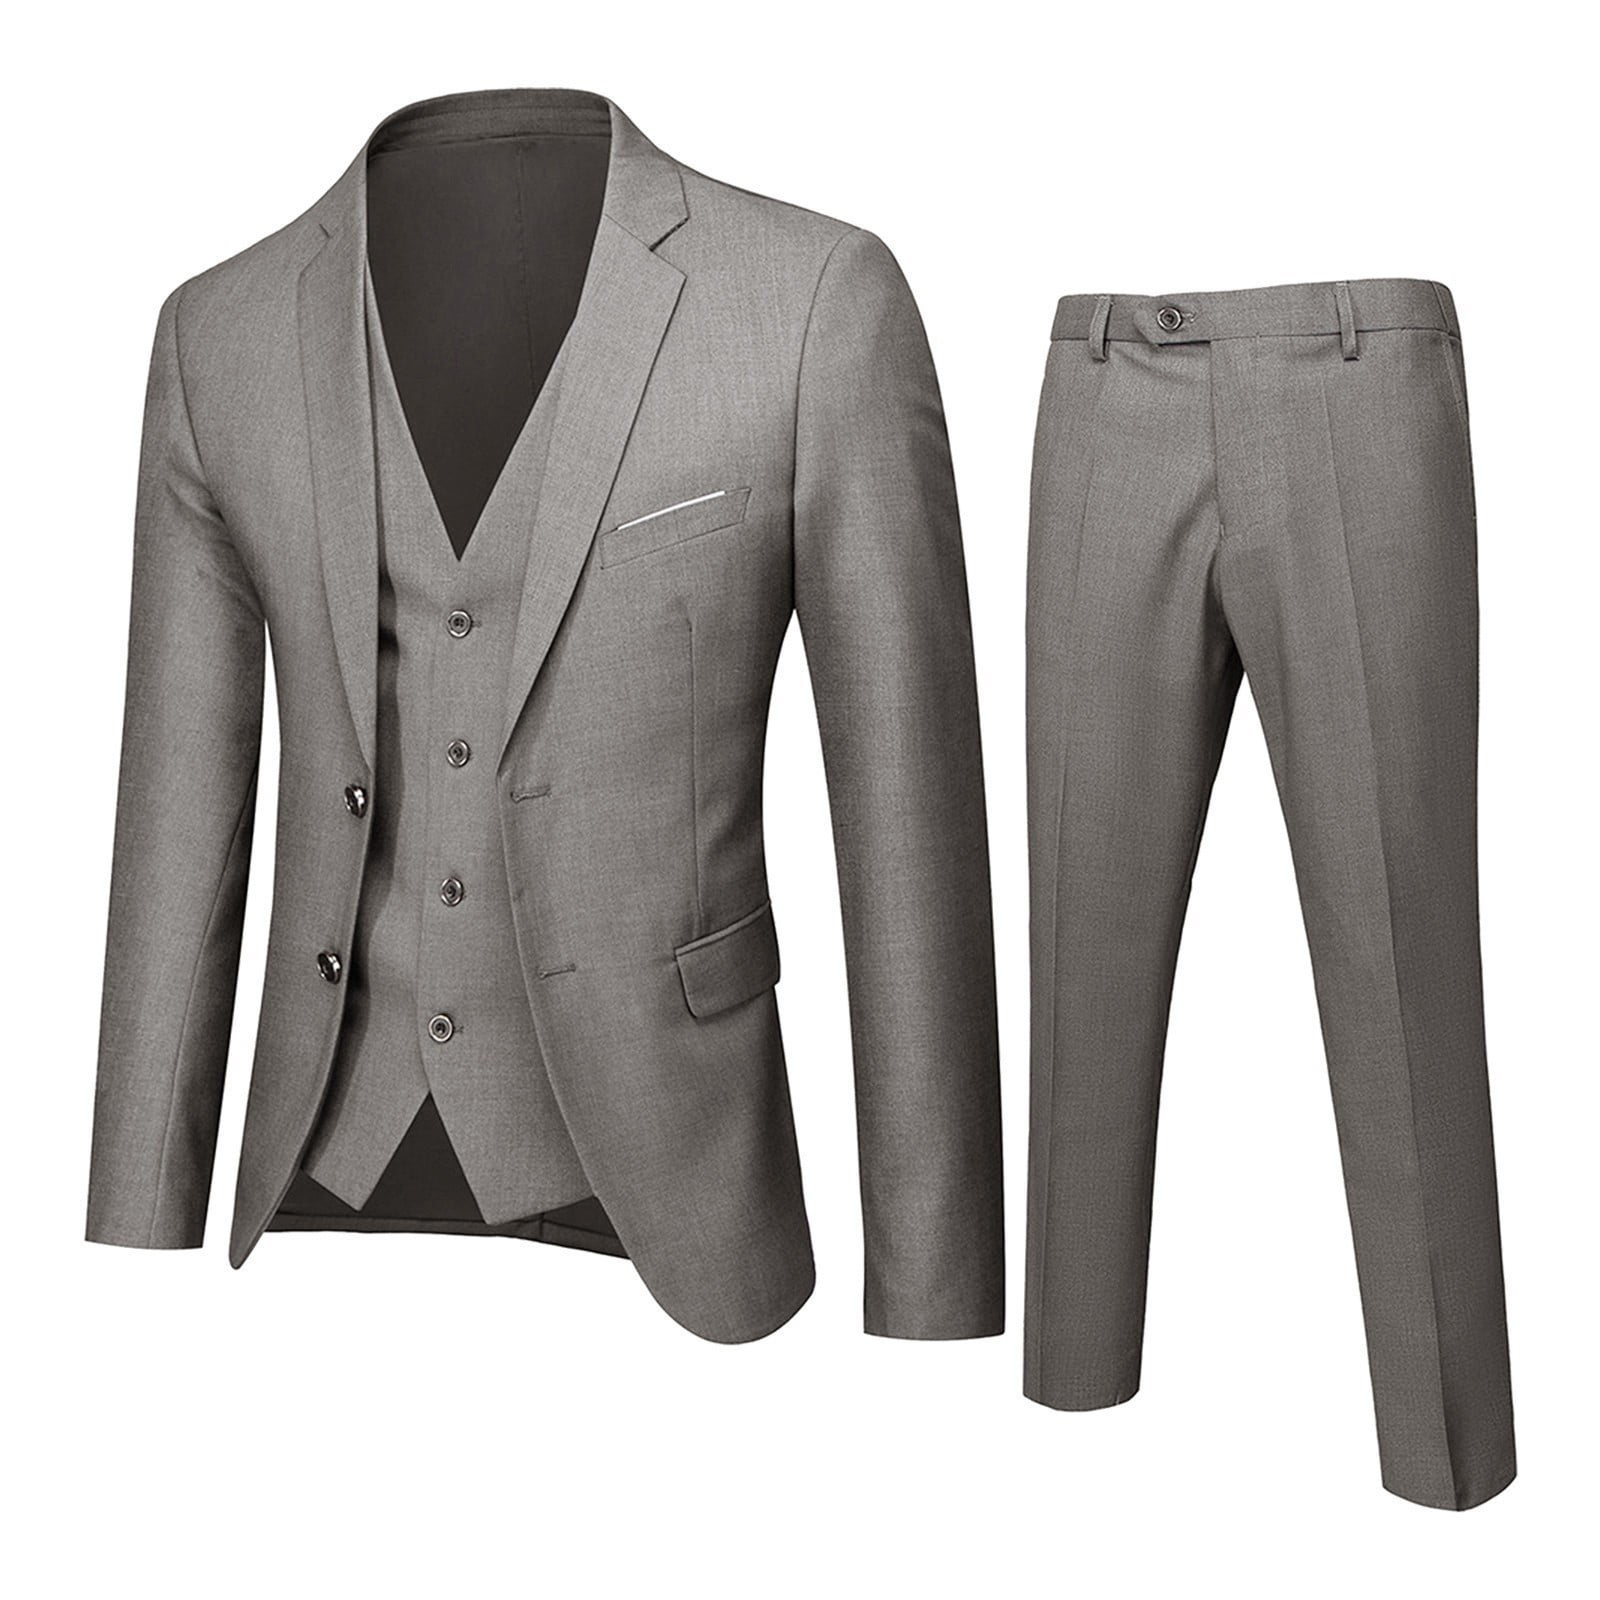 Pants Slim Party Jacket 3 Piece Men's Vest R Business Wedding Suit Suit ...